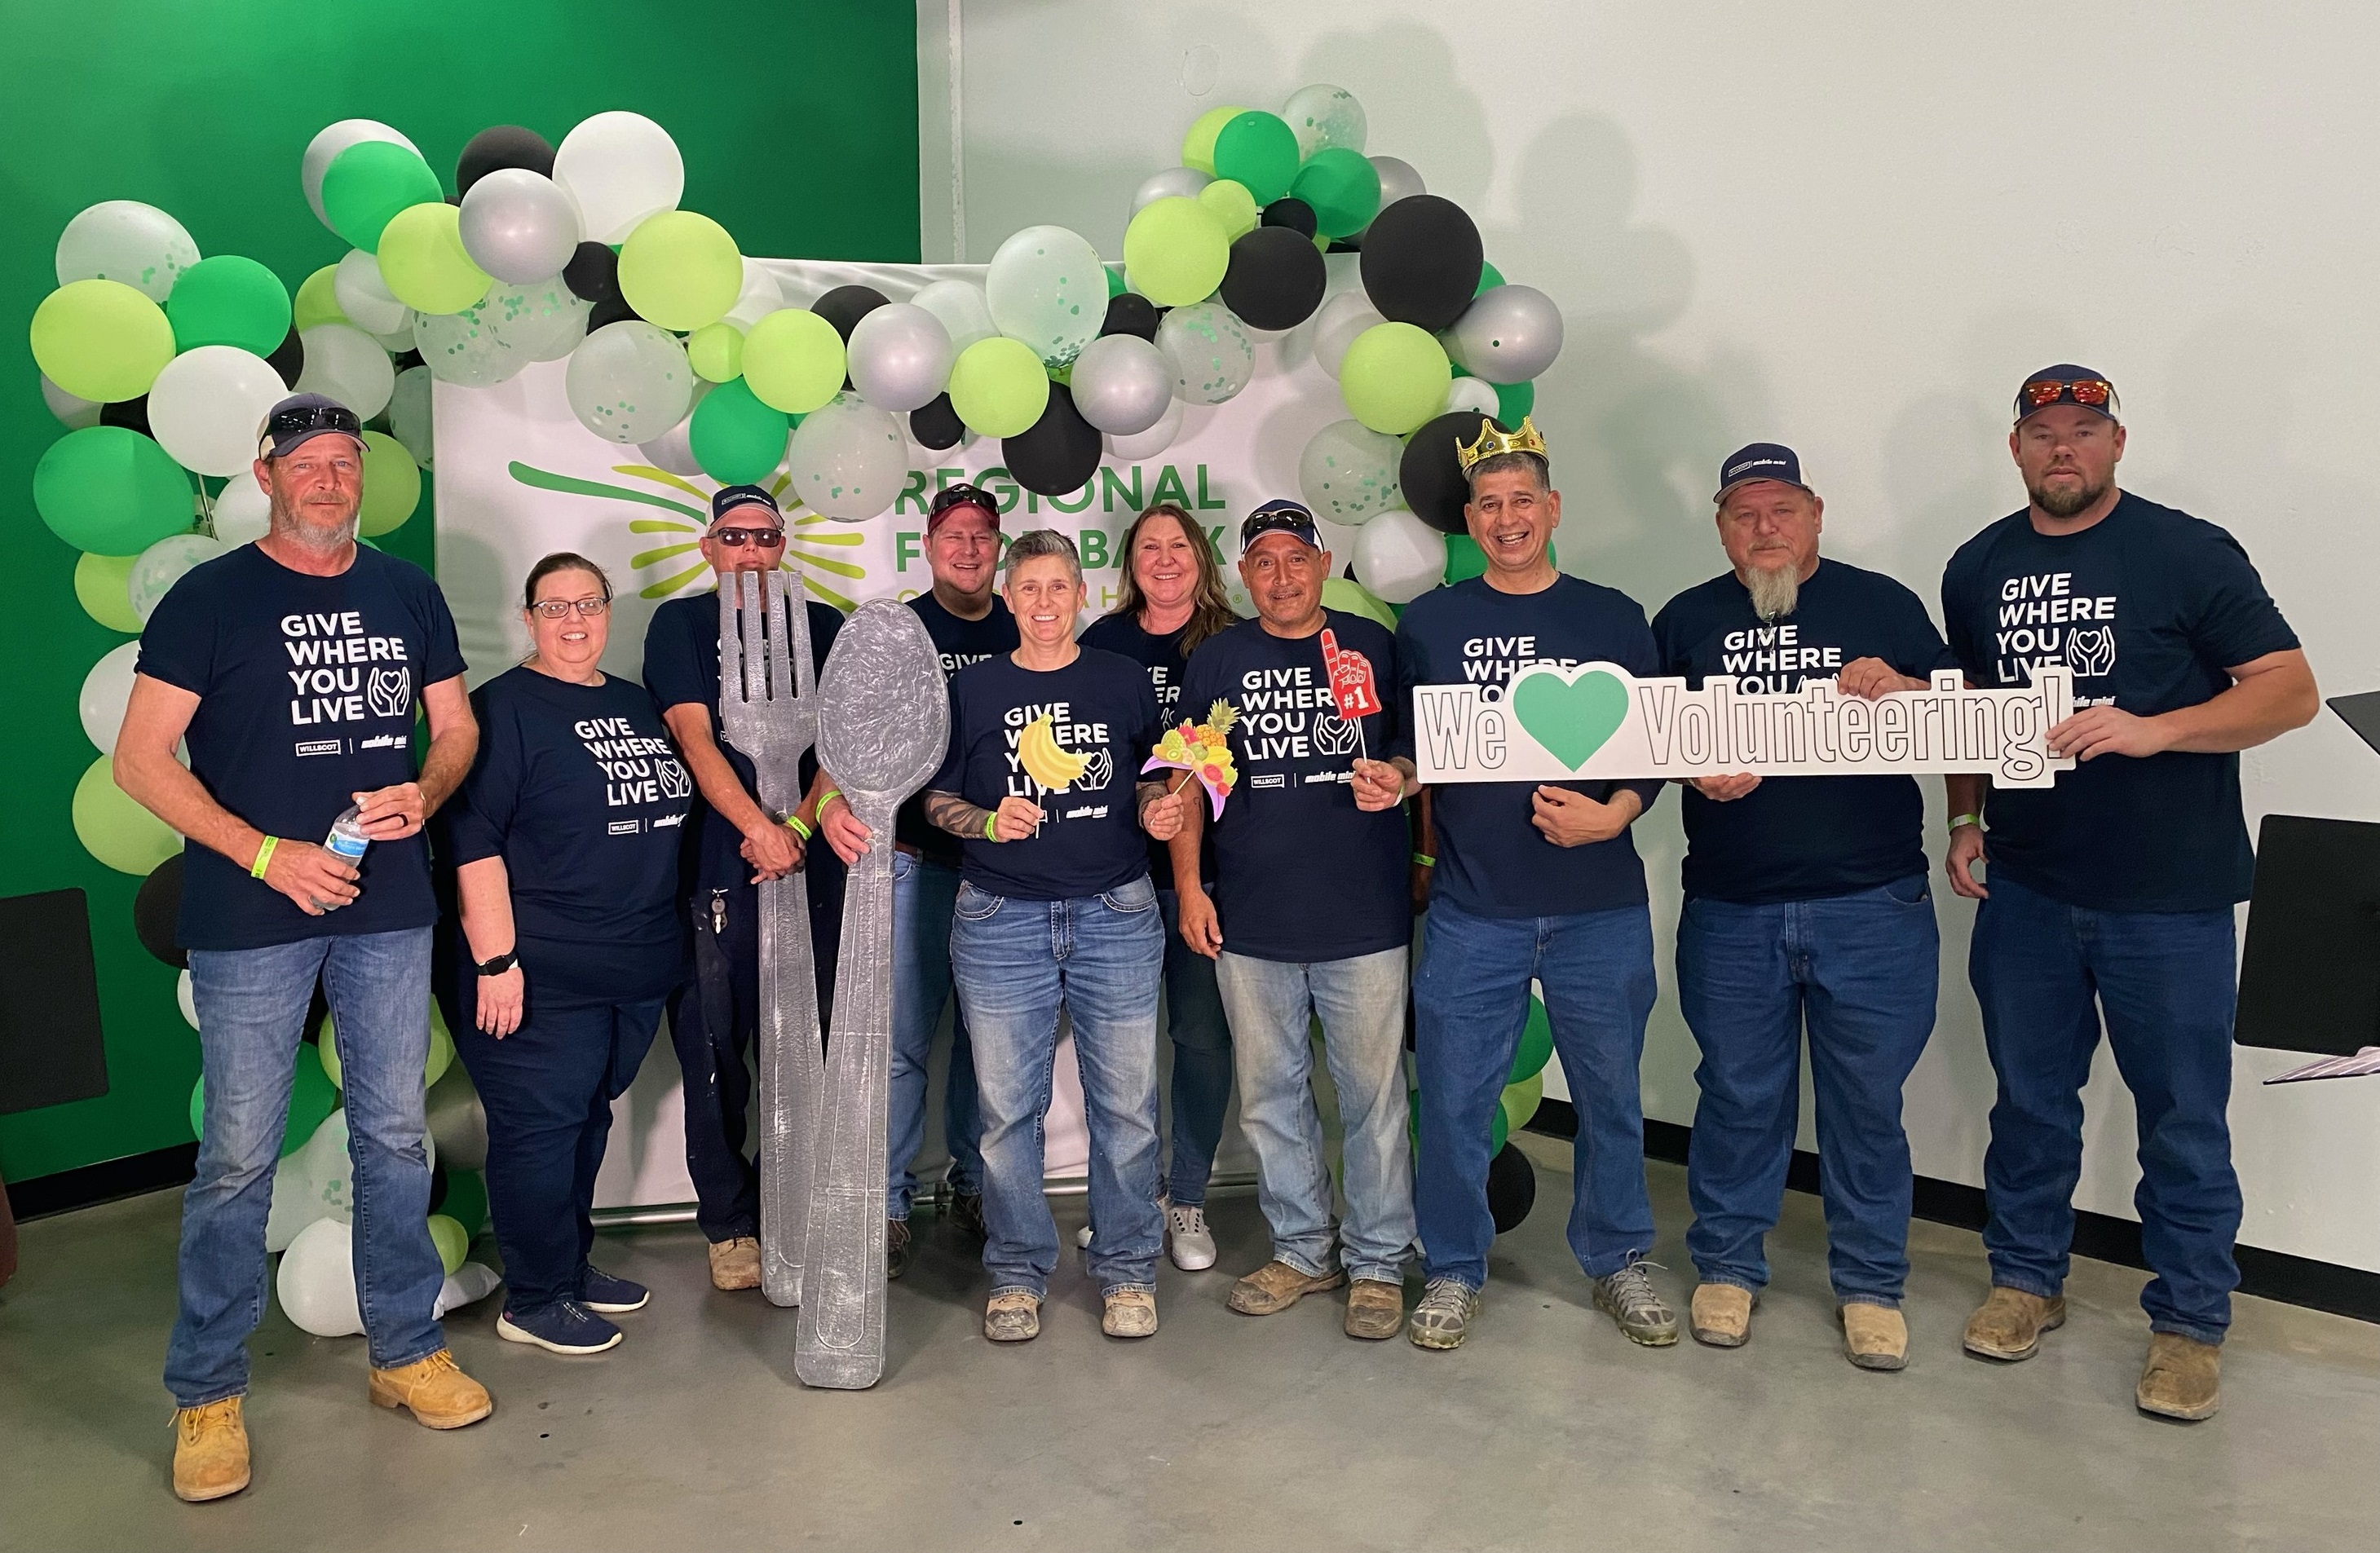 Oklahoma City Volunteers group photo at a Food Bank